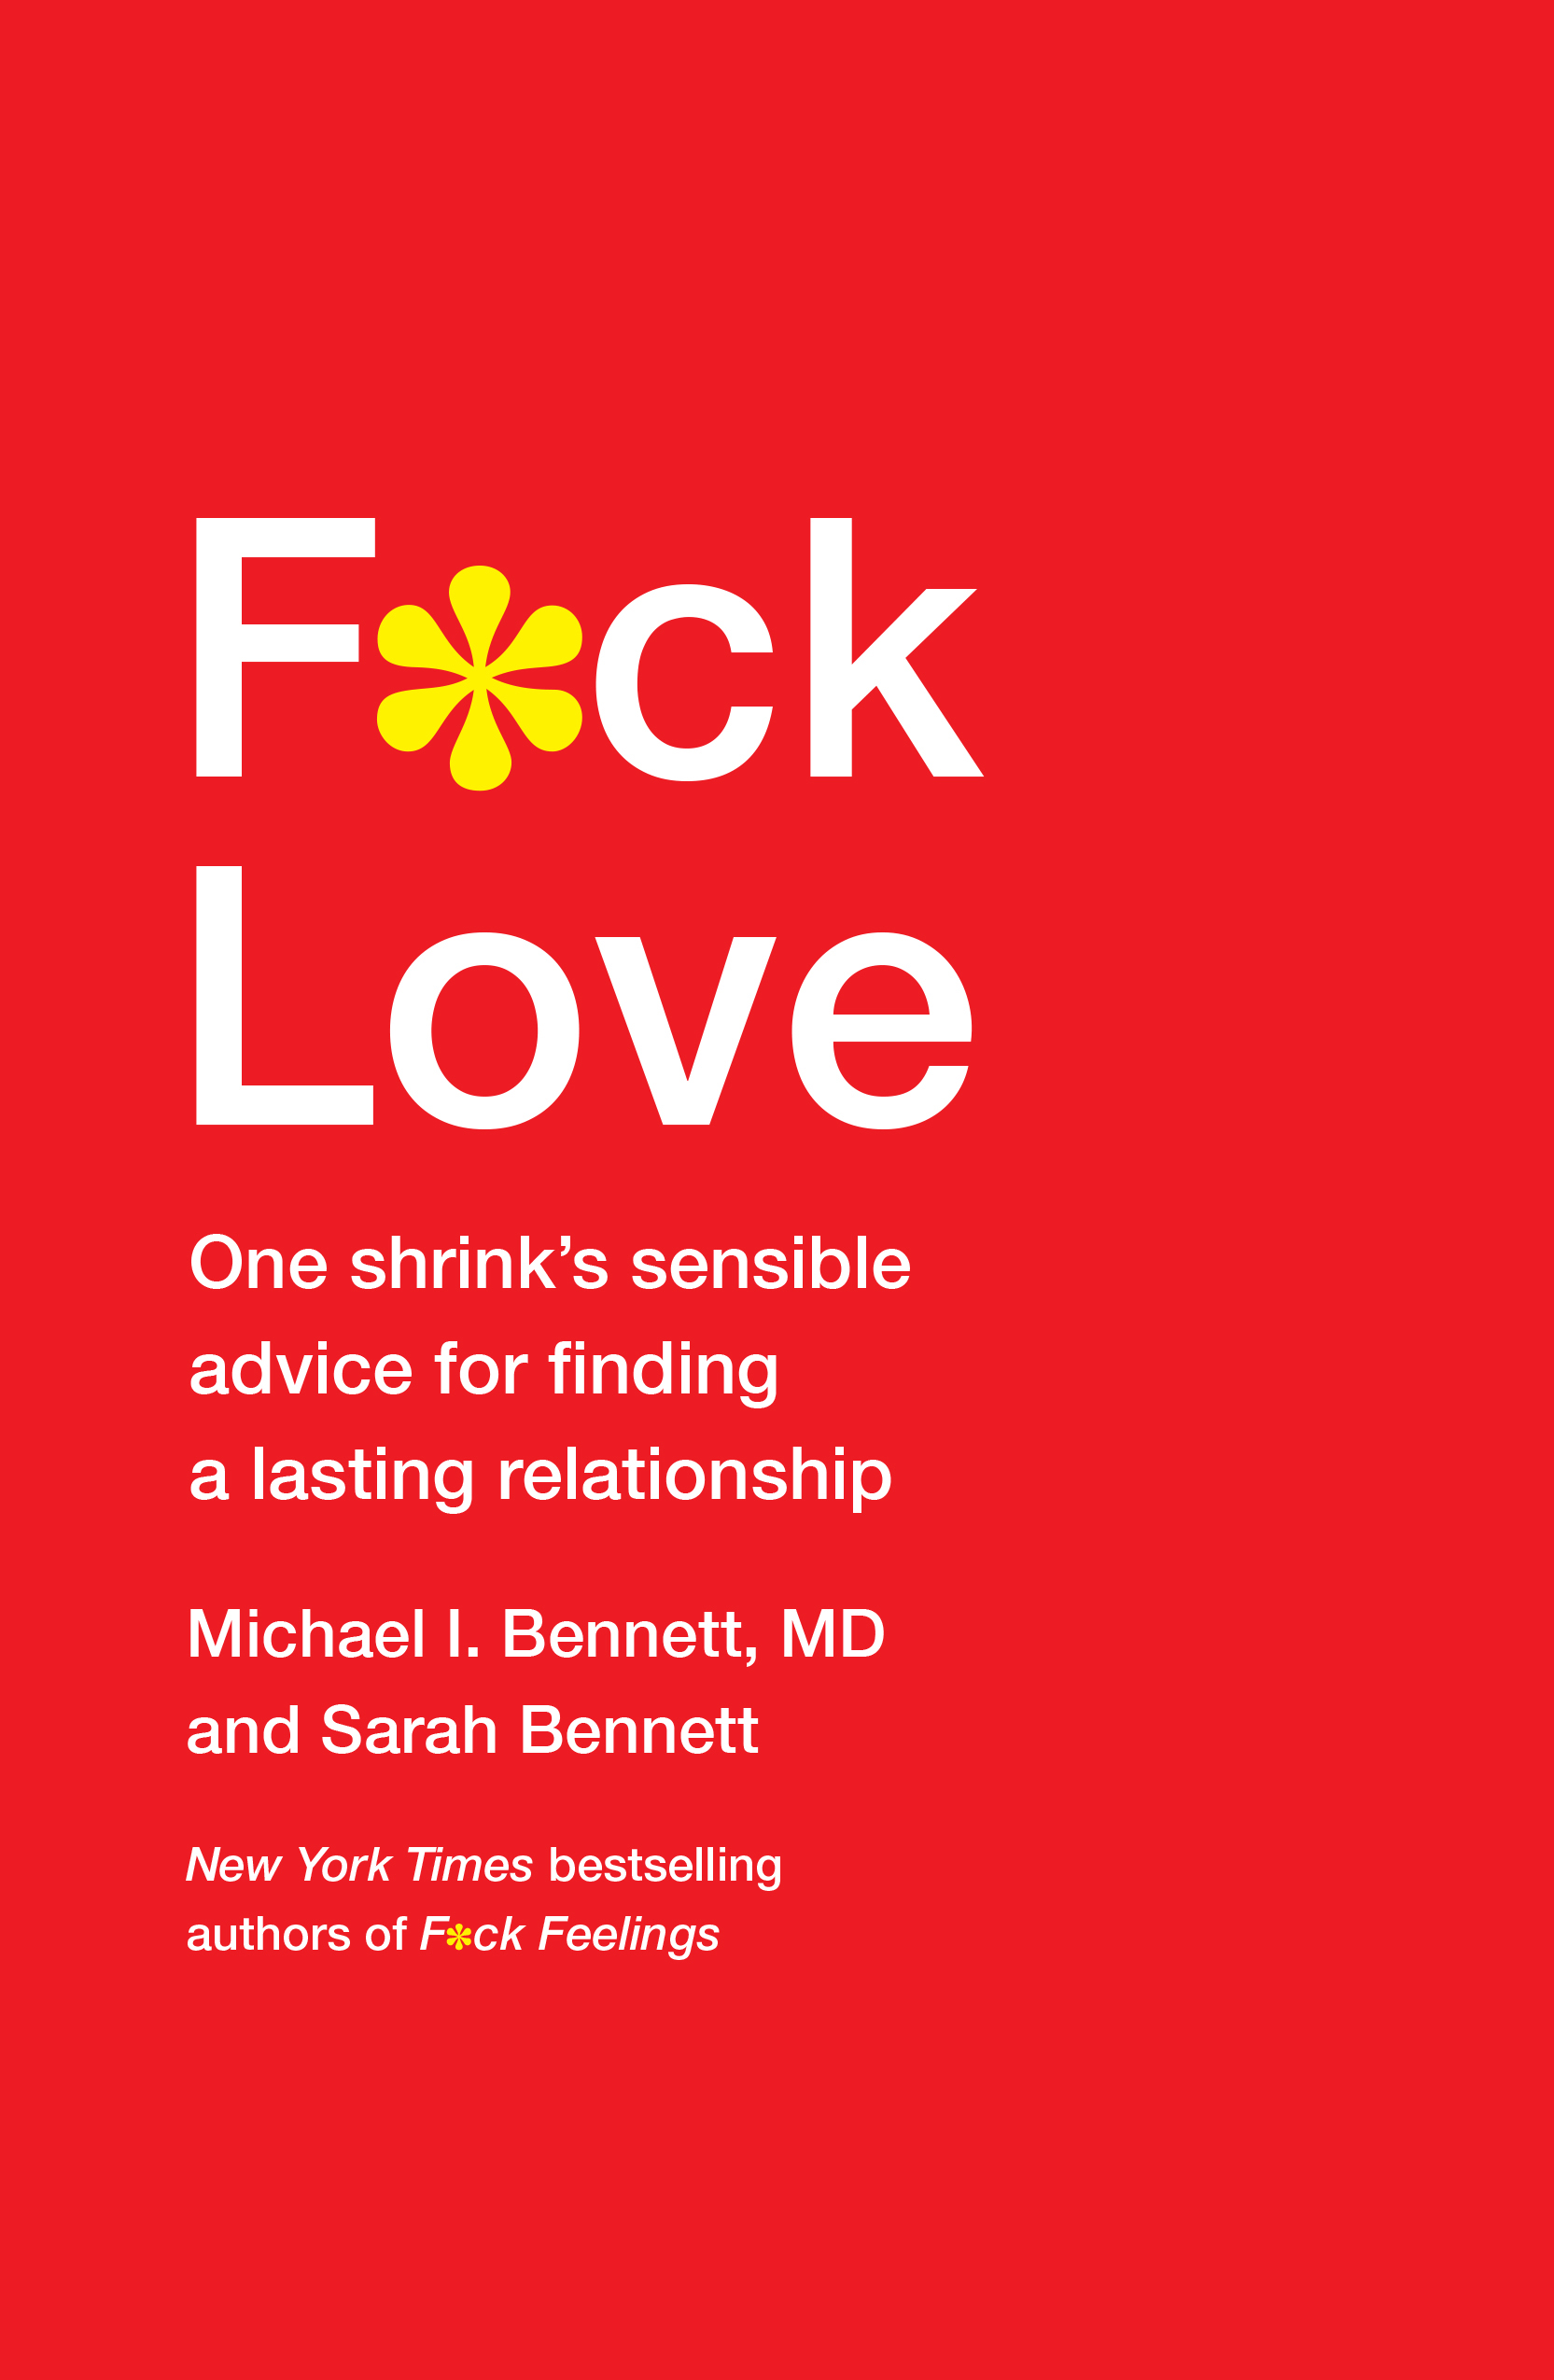 Book Launch: F*CK LOVE by Michael Bennett, MD and Sarah Bennett